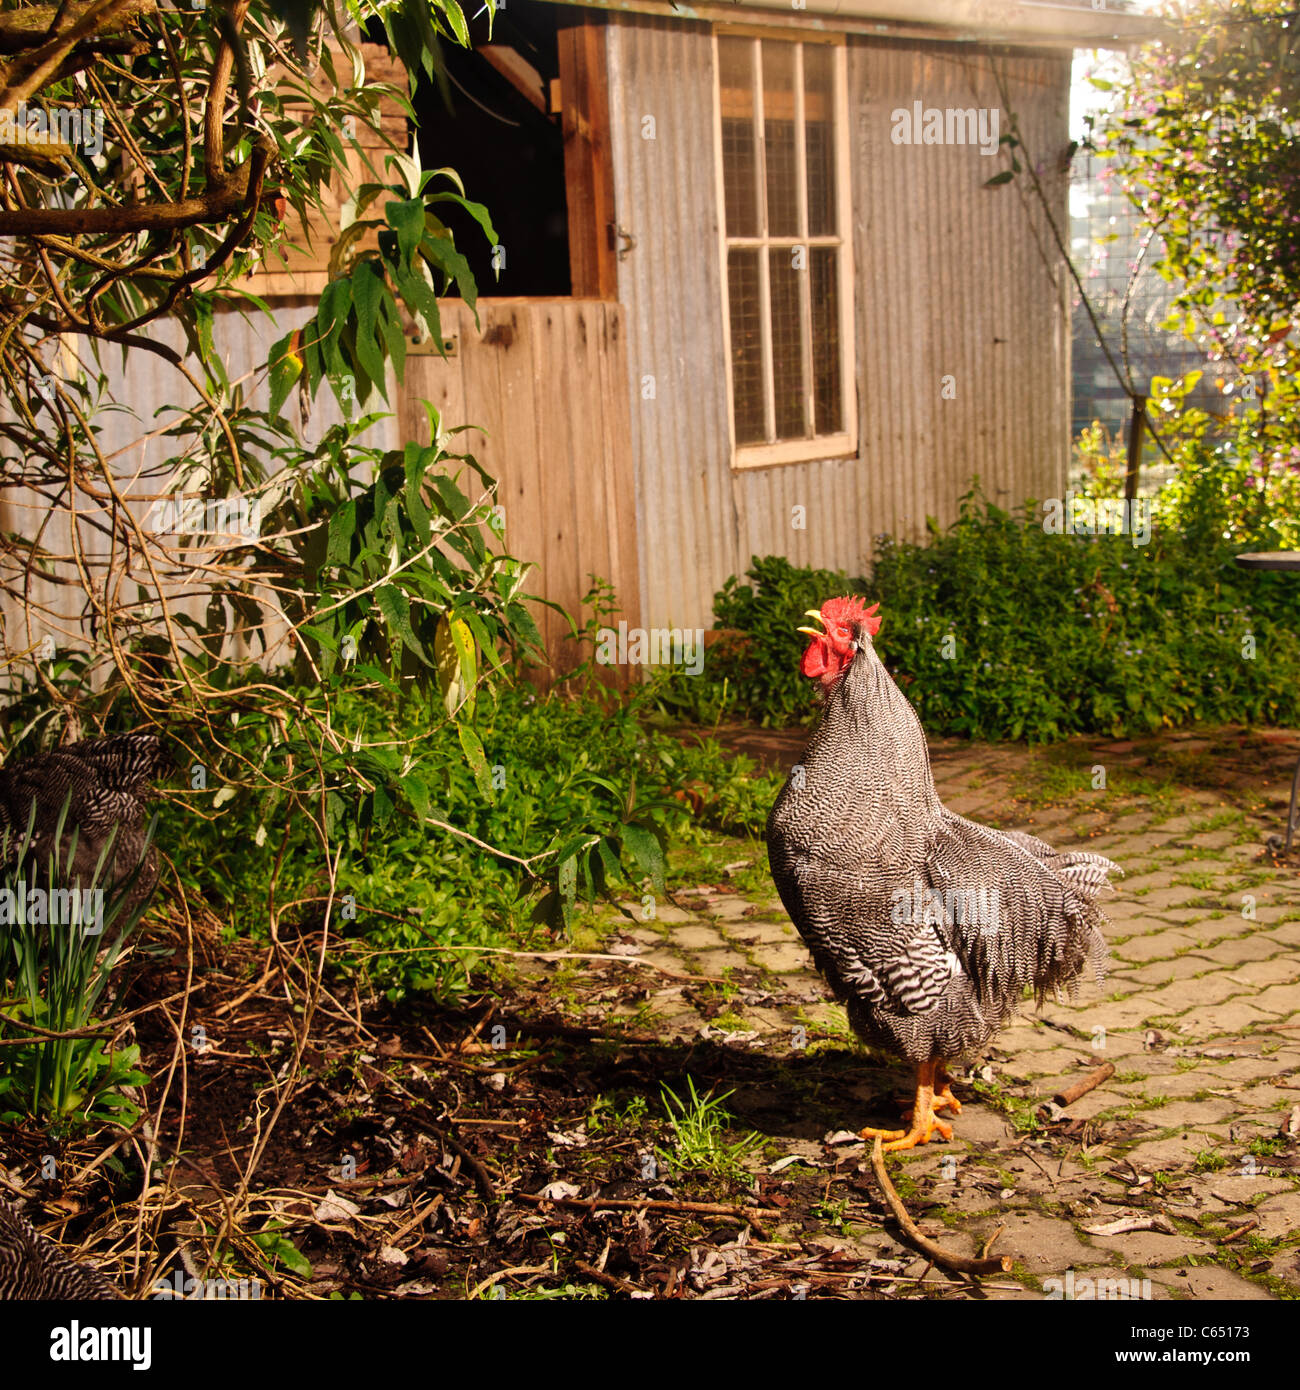 Plymouth Rock Hens Stockfotos und -bilder Kaufen - Alamy